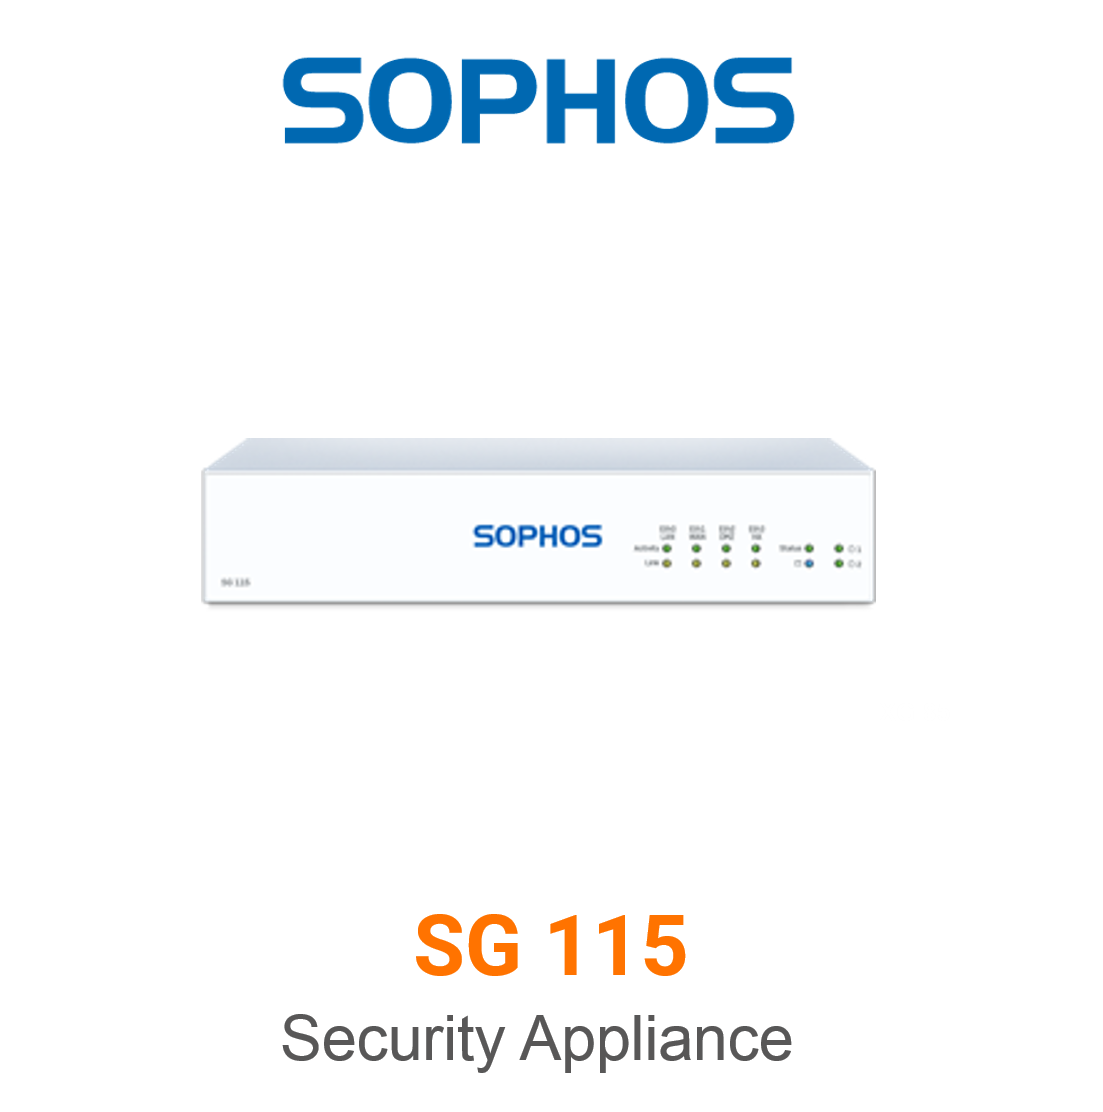 Sophos SG 115 Security Appliance Vorschaubild mit Sophos logo und Modellbezeichnung